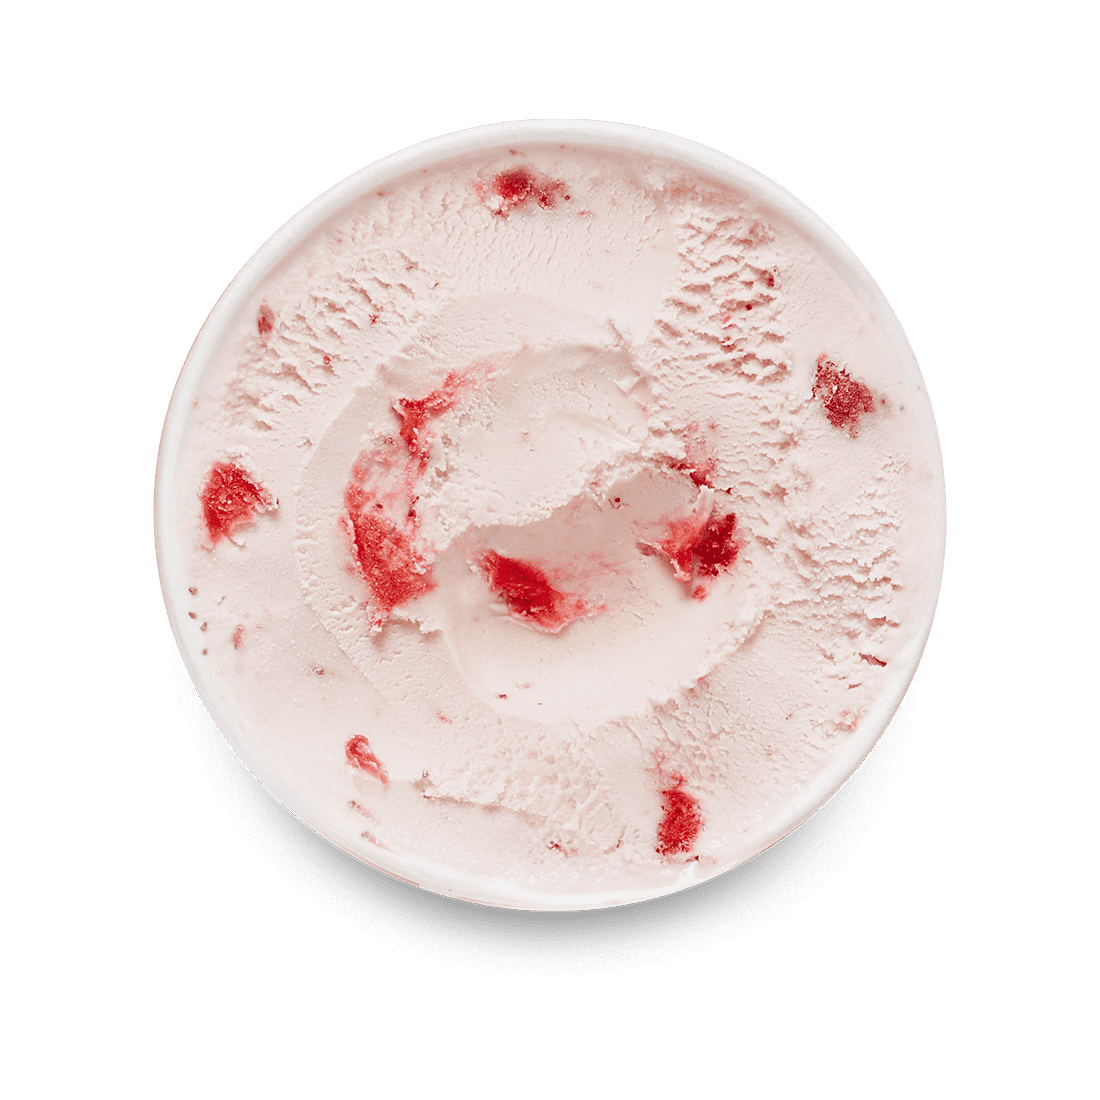 果子草莓冰糕用在一块白色板材的薄菏 库存照片. 图片 包括有 果子, 乳脂状, 粉红色, 片式, 土气, 弯脚的 - 72028290